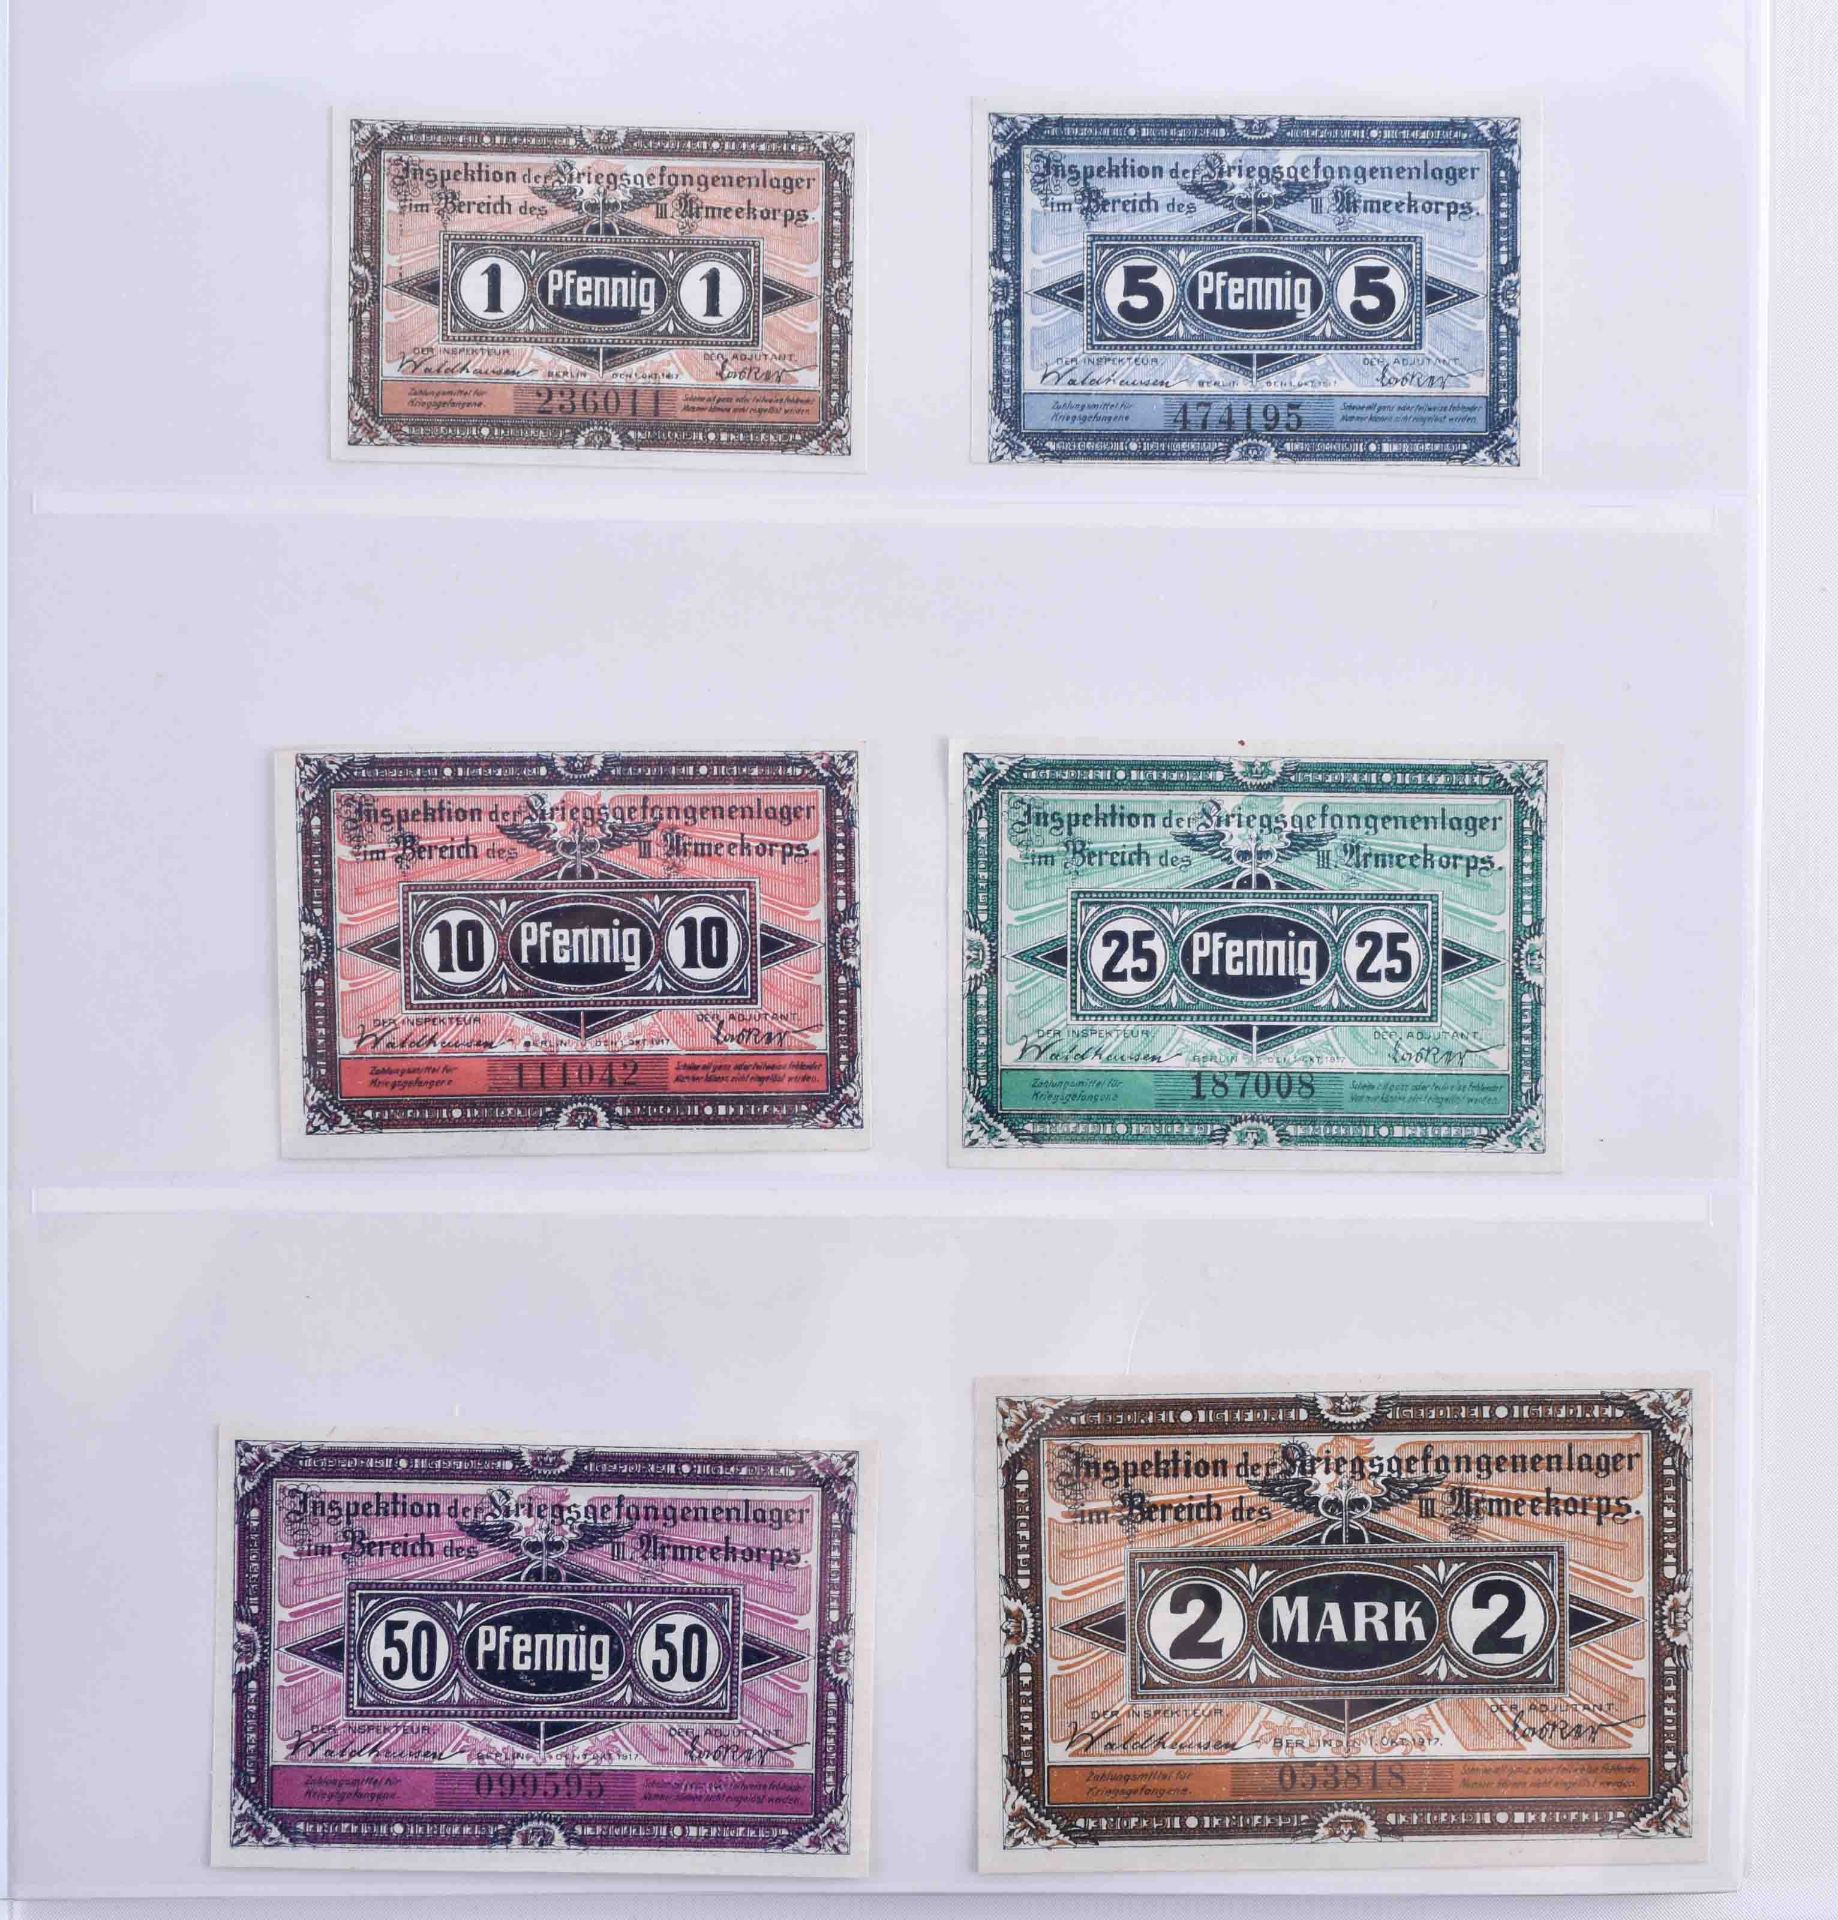 Collection of prisoner of war camp money